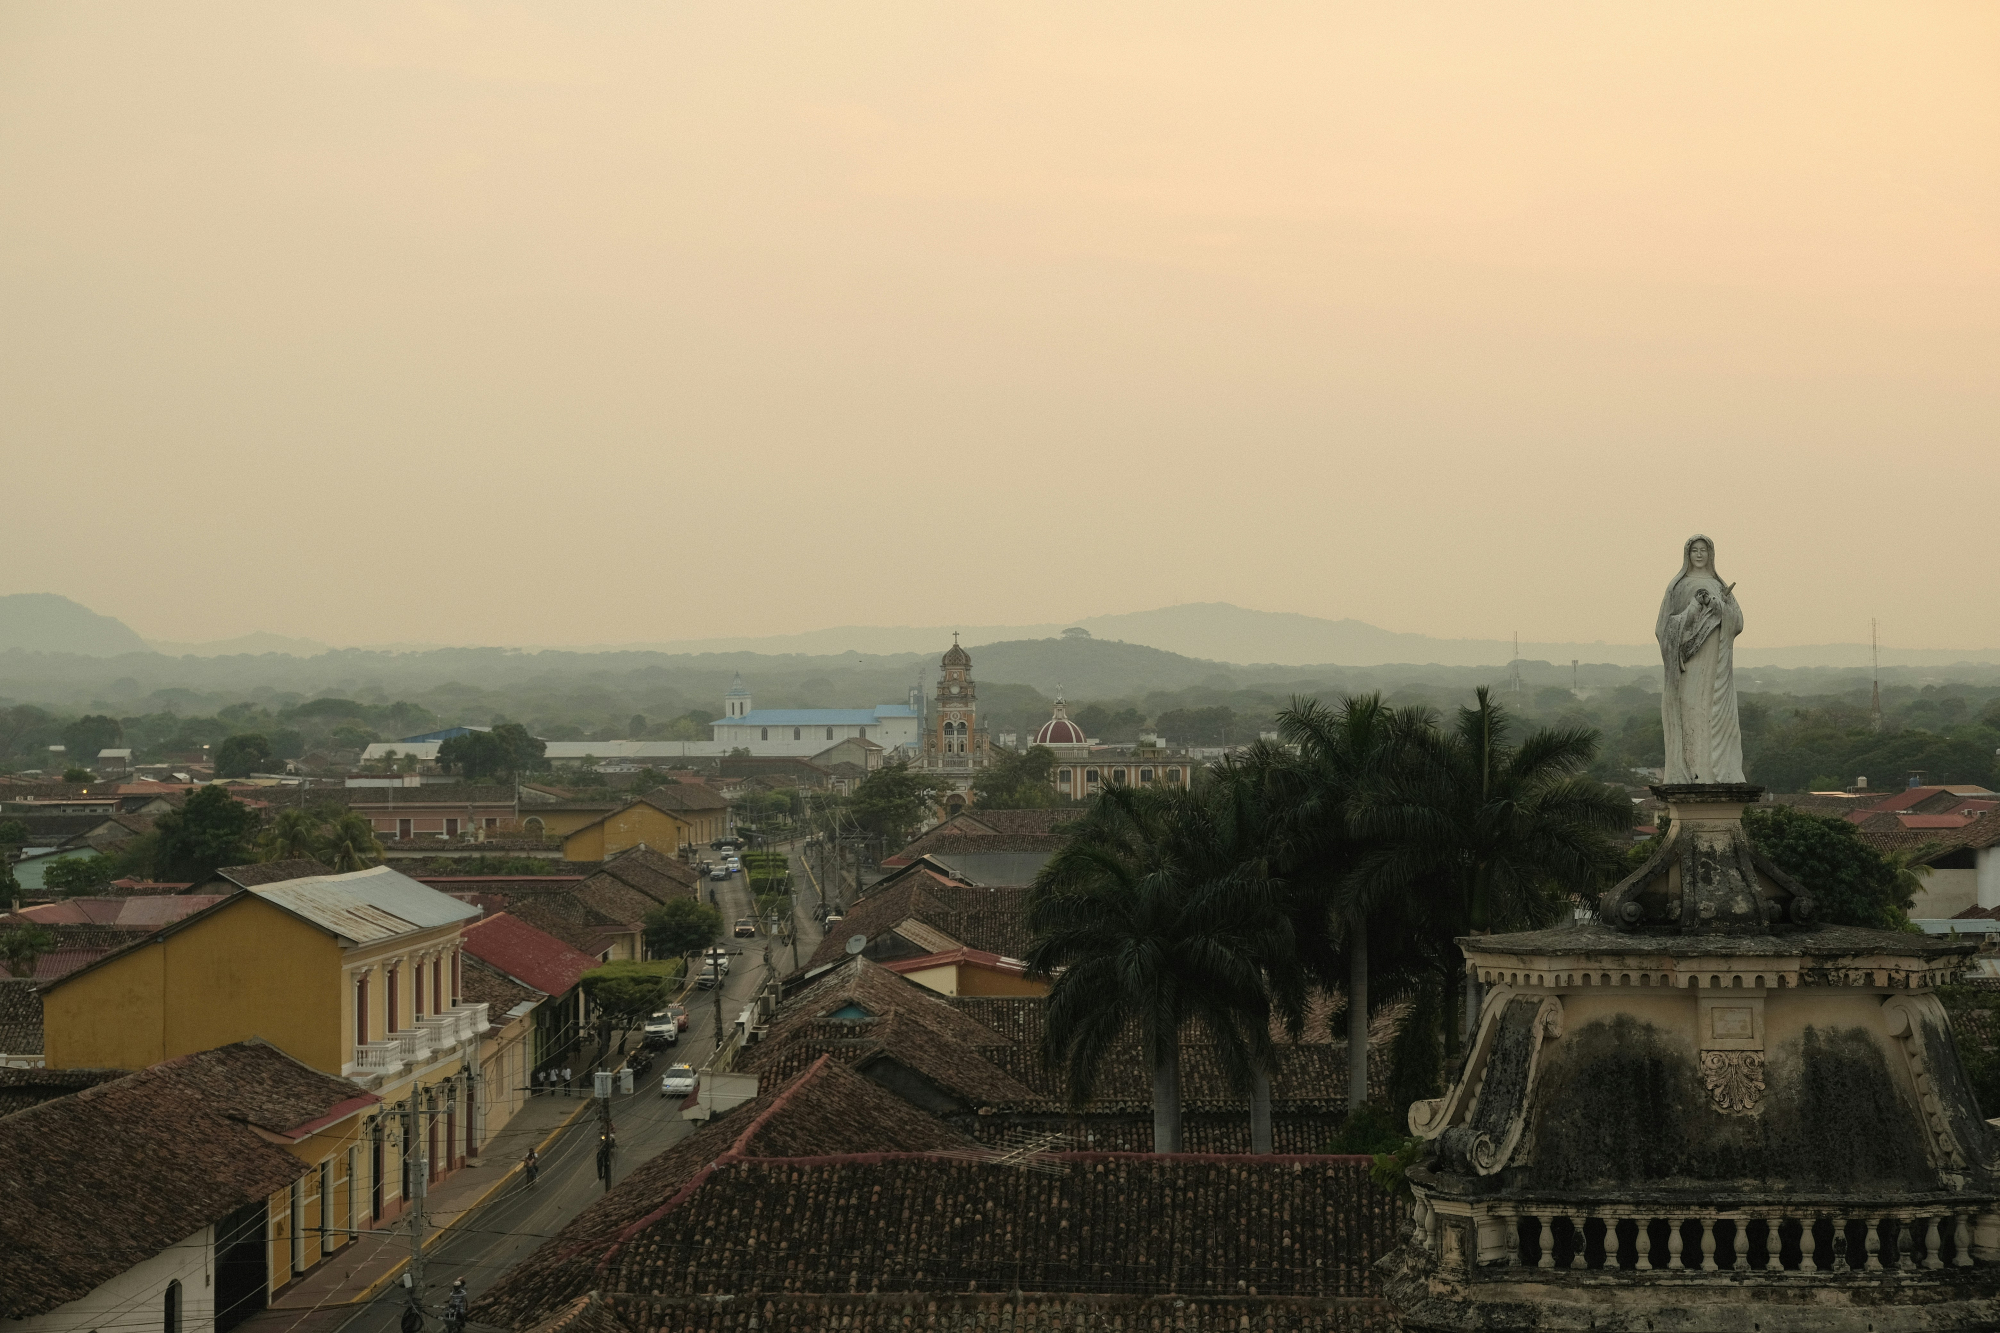 découvrez toutes les merveilles du nicaragua, une destination pleine d'aventure, de culture et de paysages magnifiques.